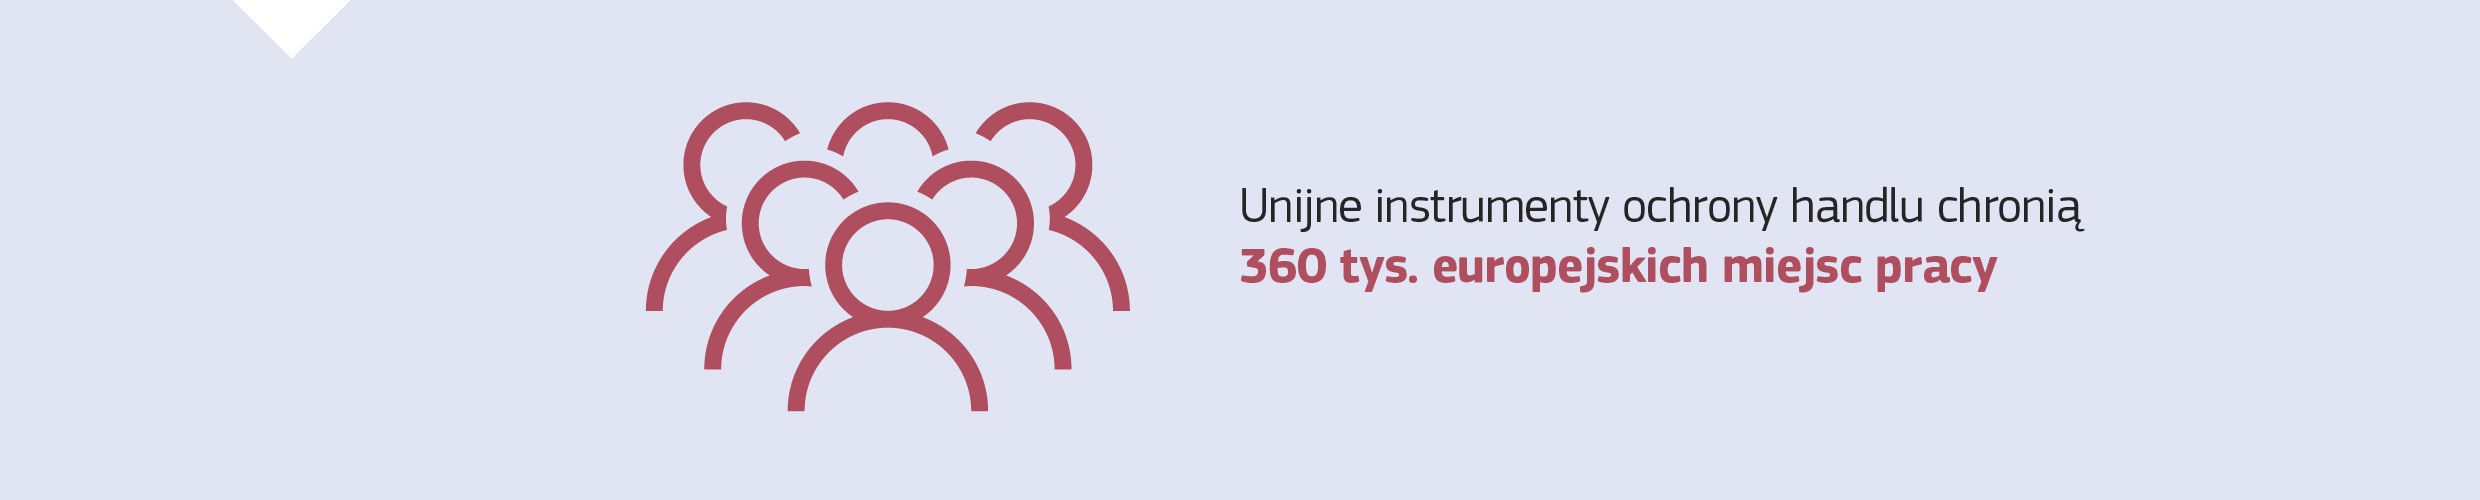 Unijne instrumenty ochrony handlu chronią 360 tys. europejskich miejsc pracy